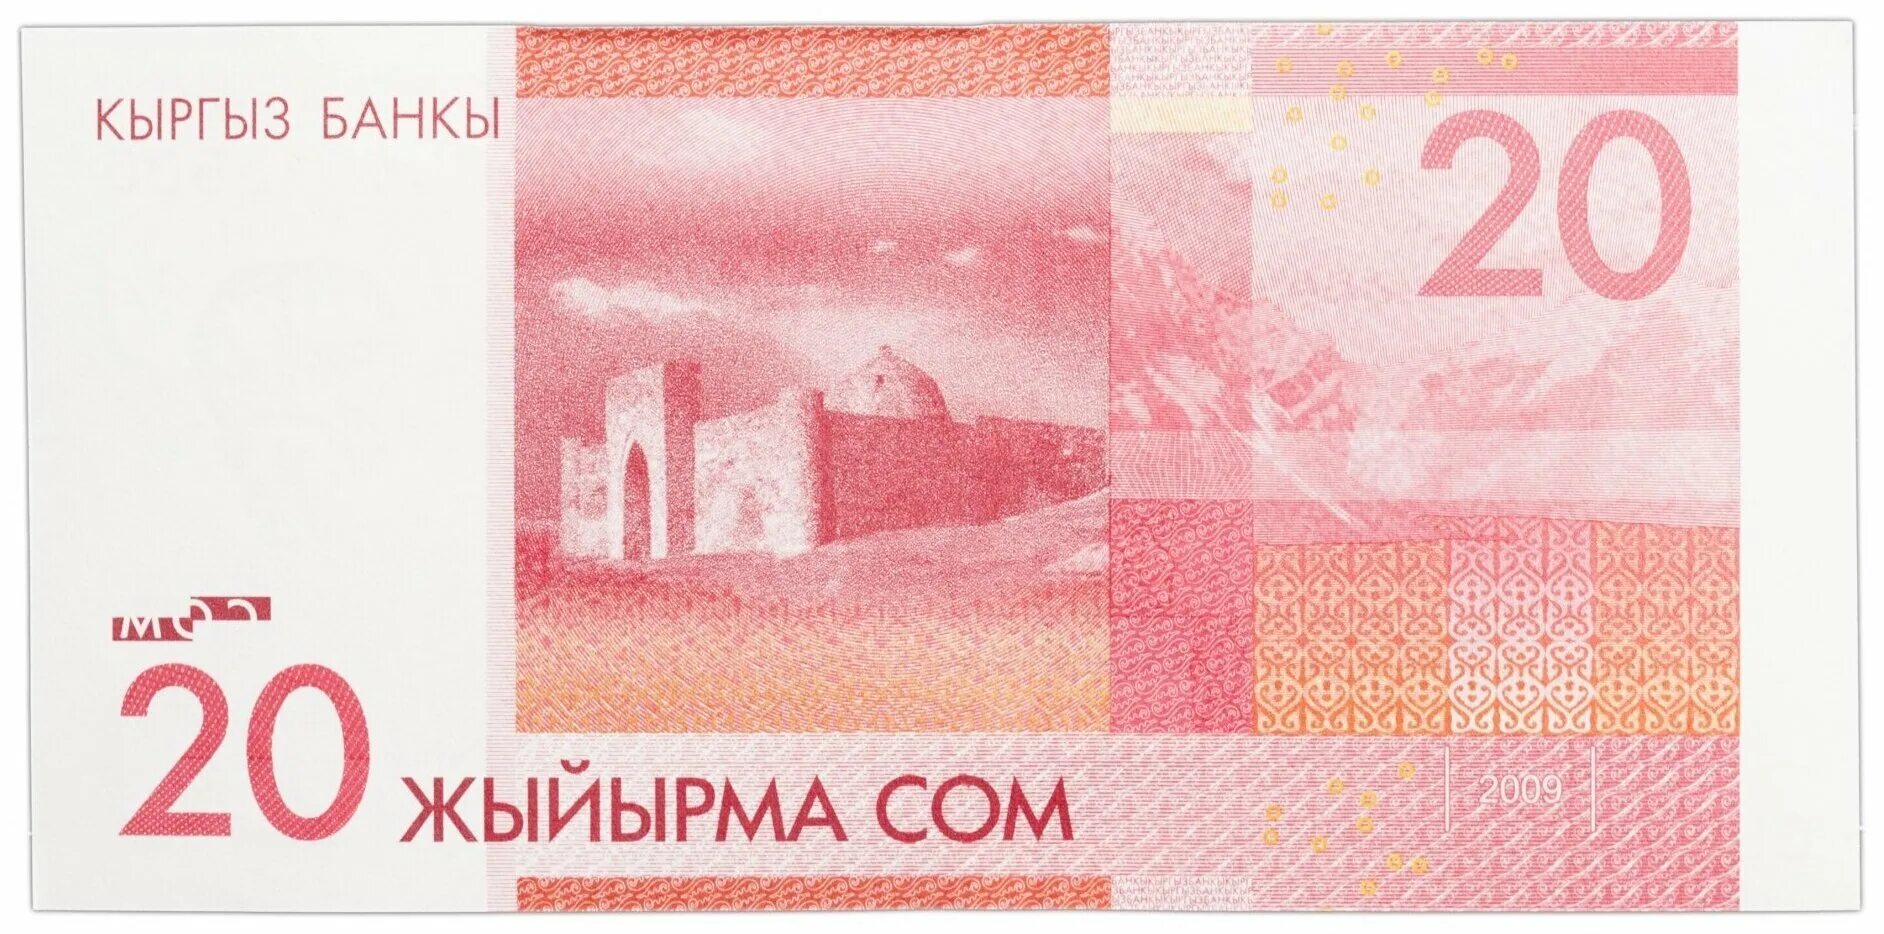 2009 год кыргызстан